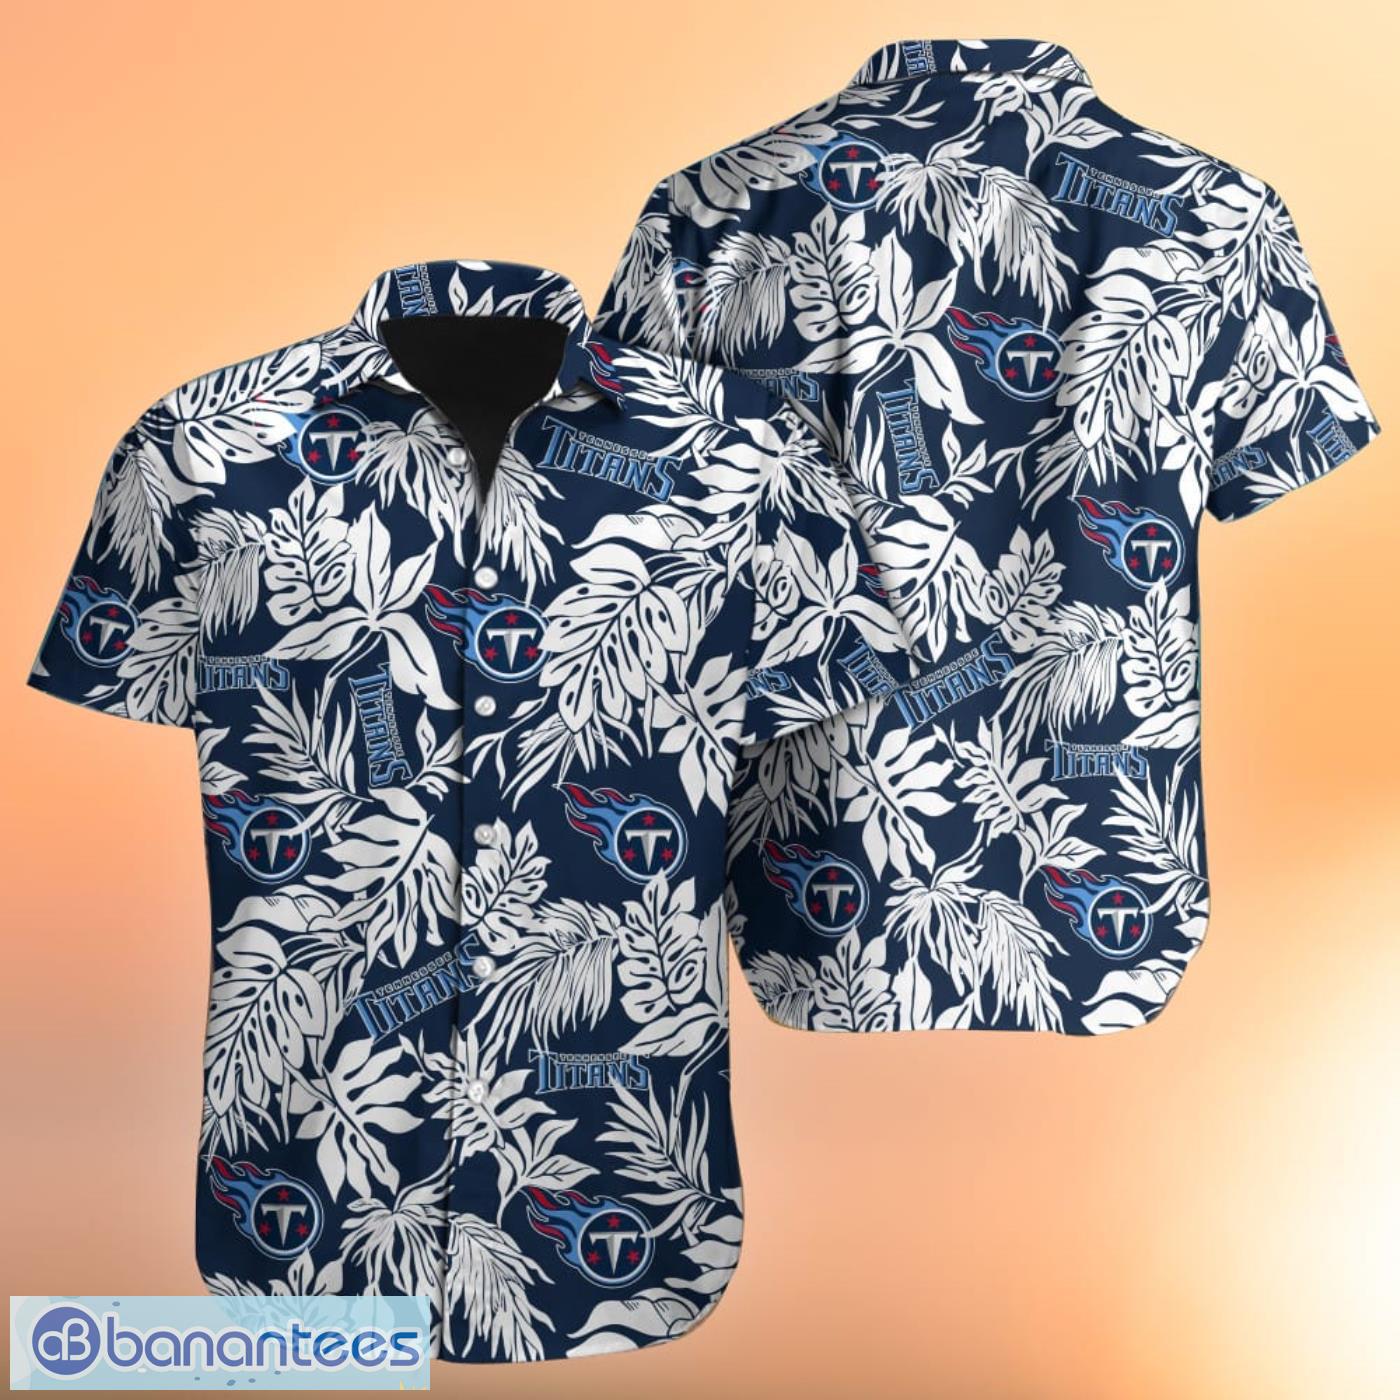 Personalized Texas Rangers Baseball Full Printing Hawaiian Shirt - Grey  Blue - Senprintmart Store